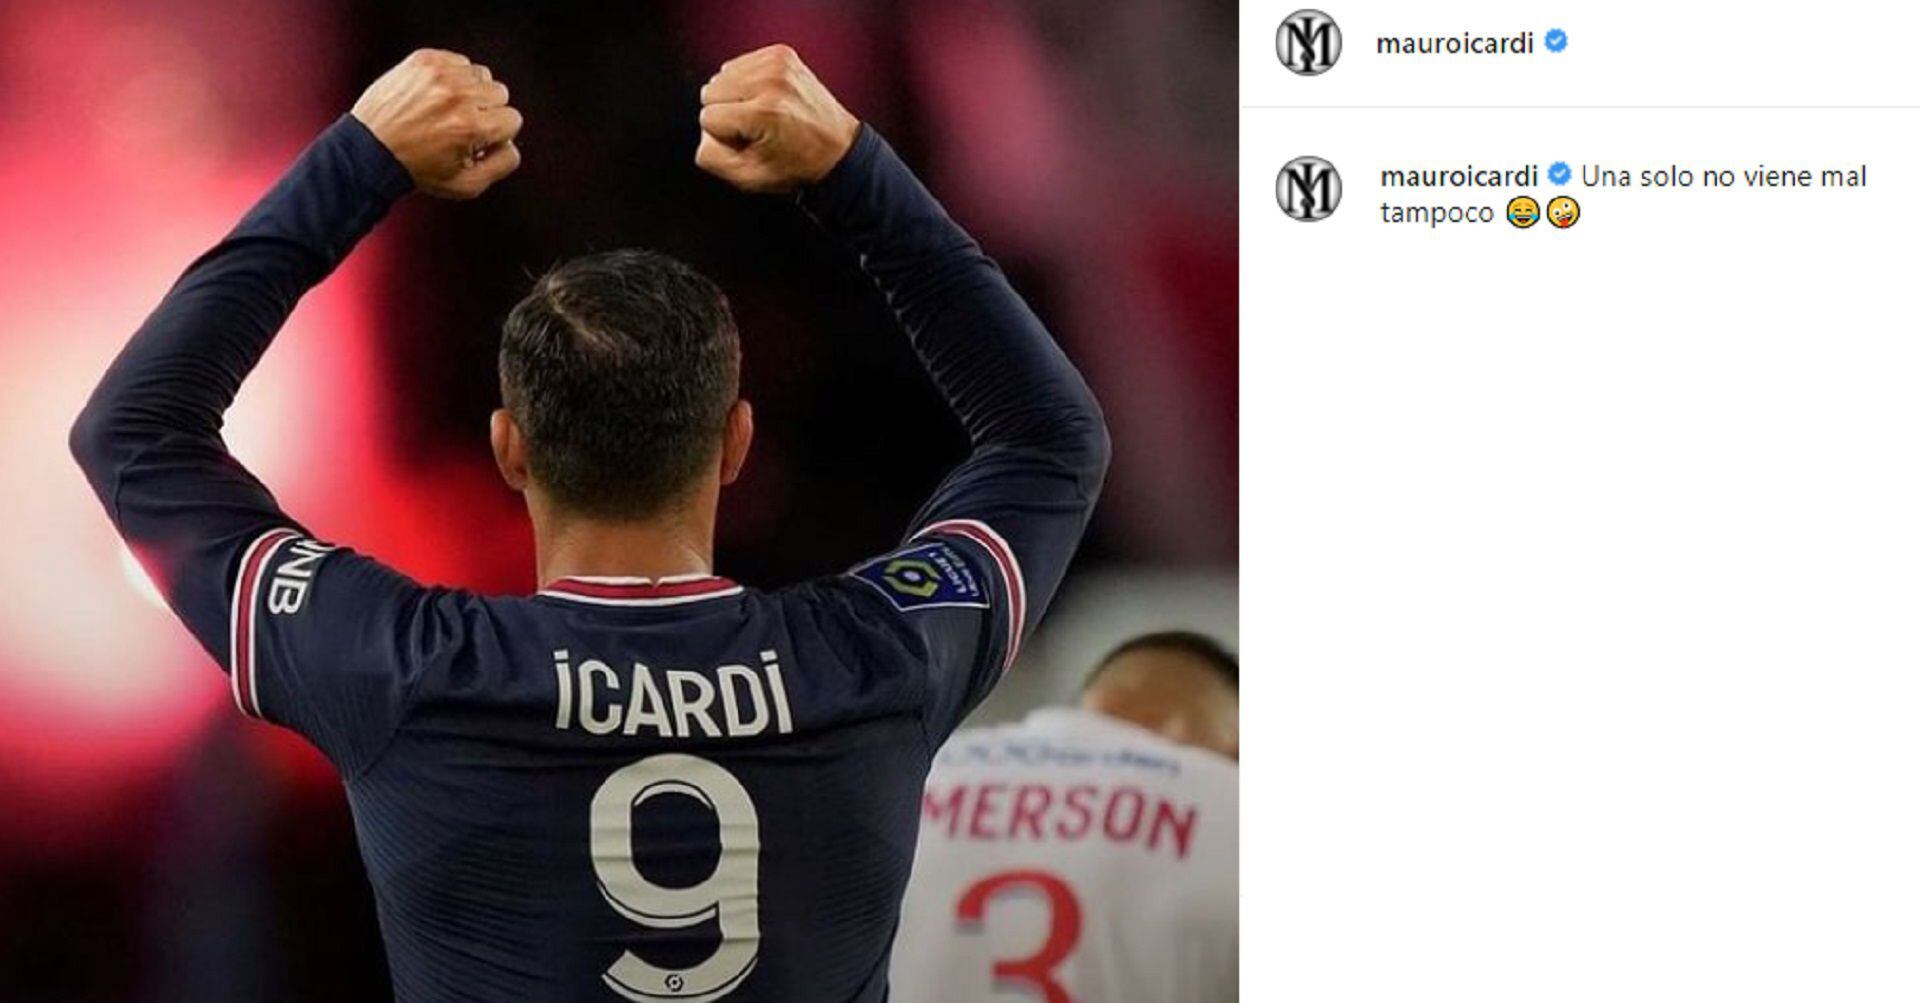 La última publicación de Mauro Icardi en instagram